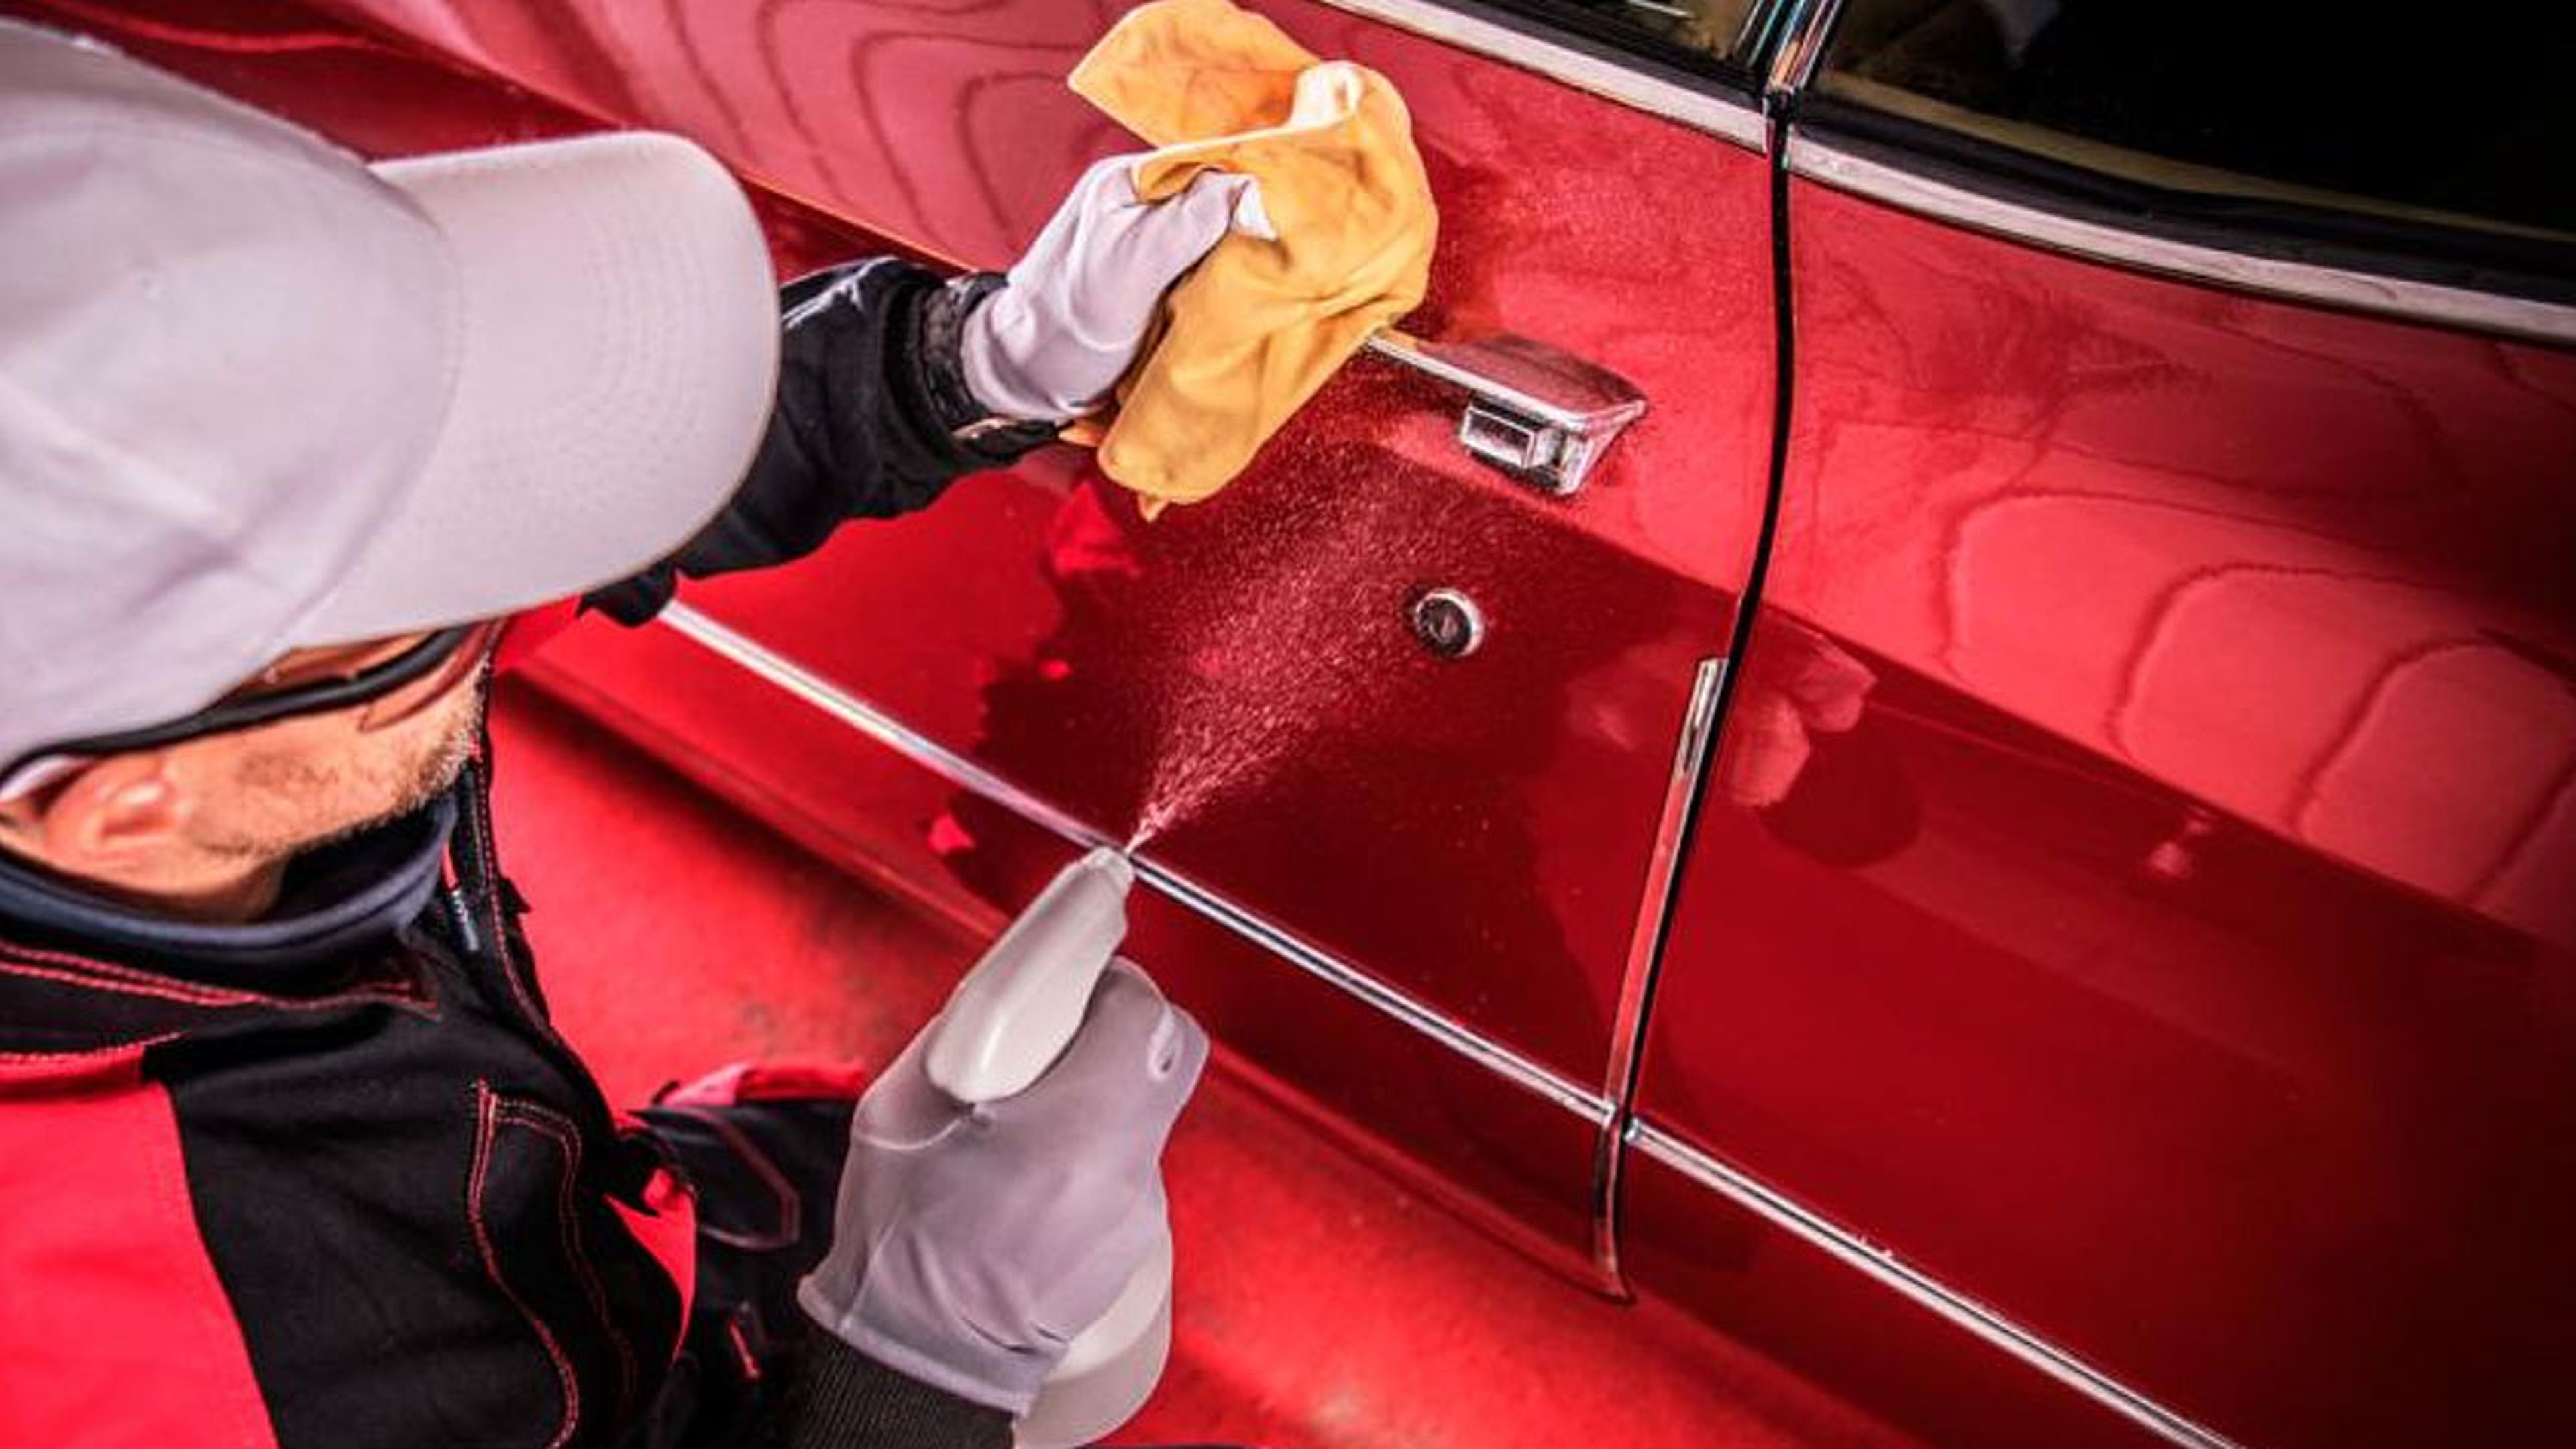 11 cosas que podrías hacer mal al lavar tu auto